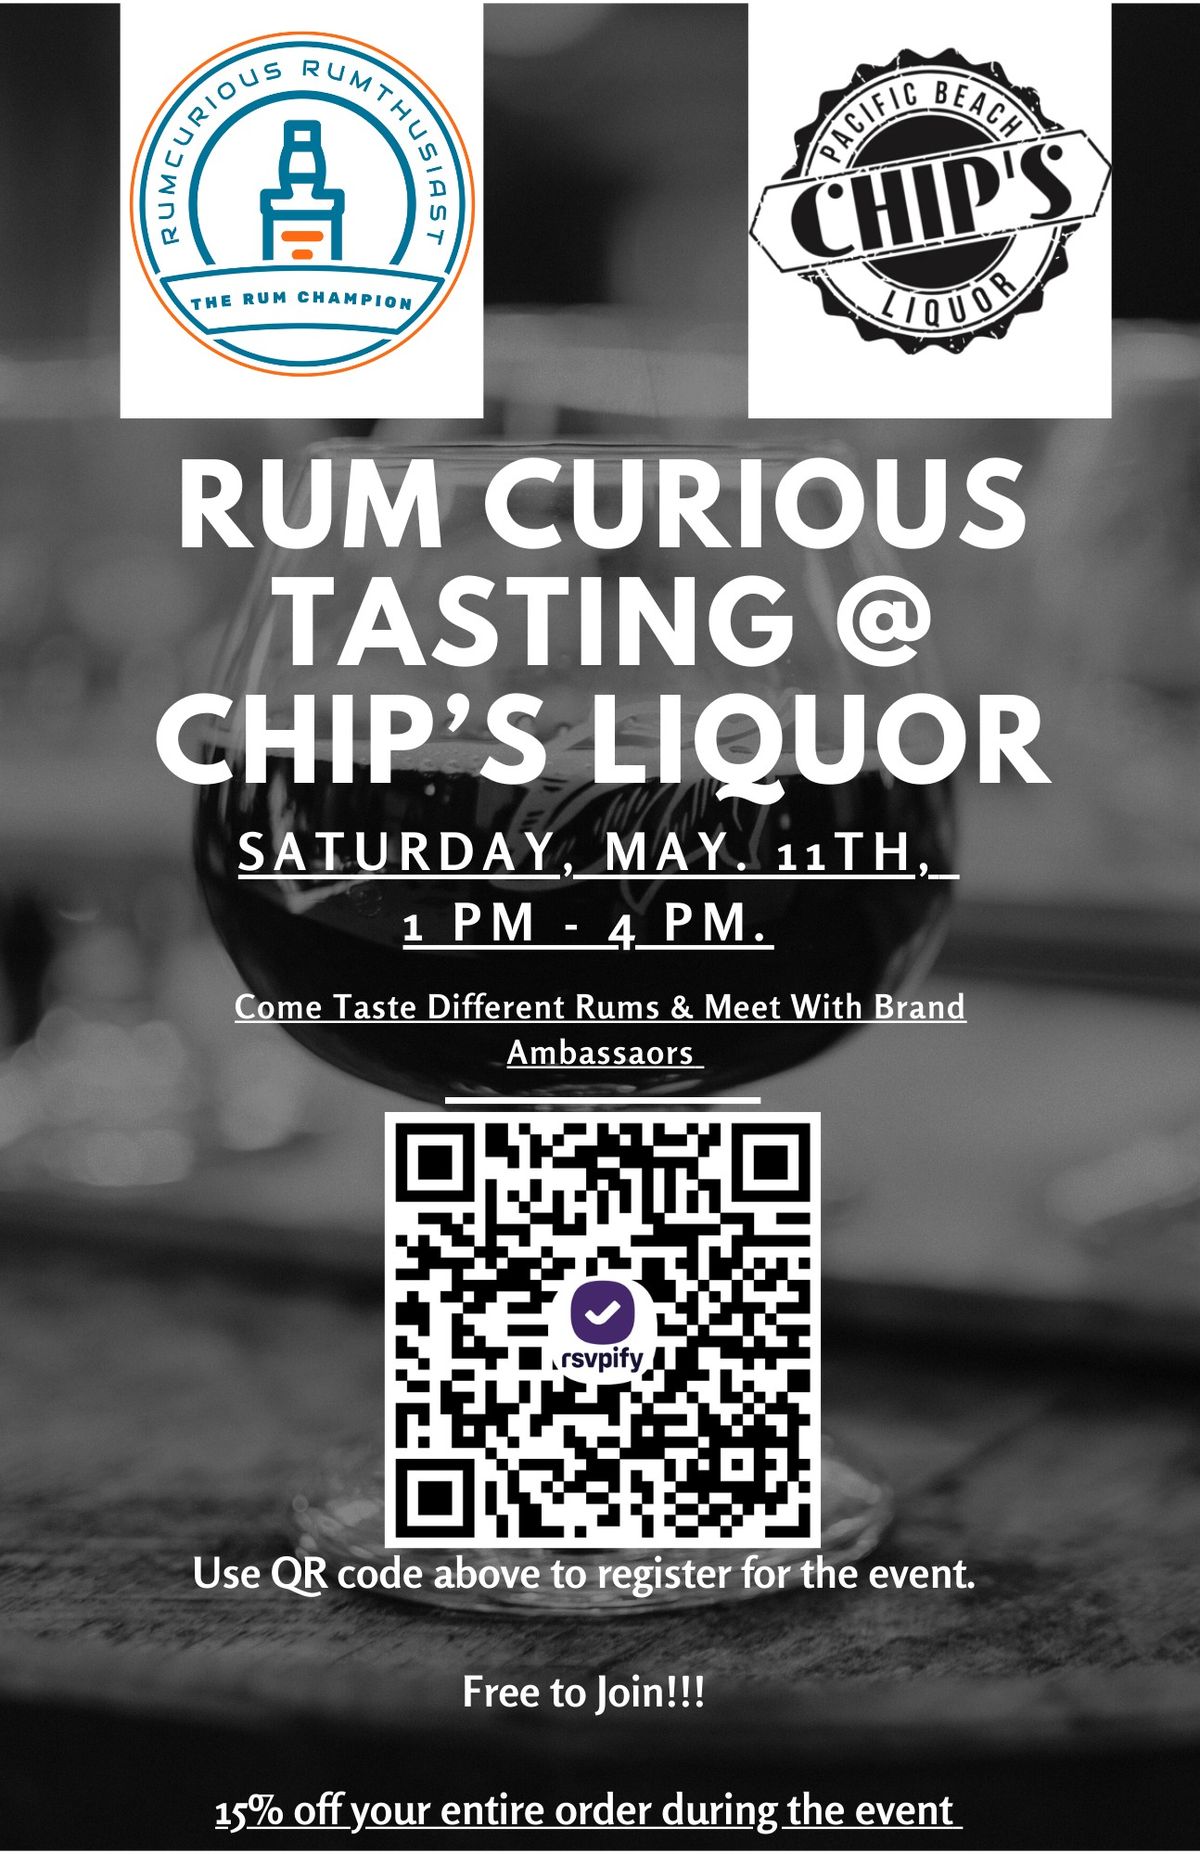 Rum Curious Tasting at Chip's Liquor